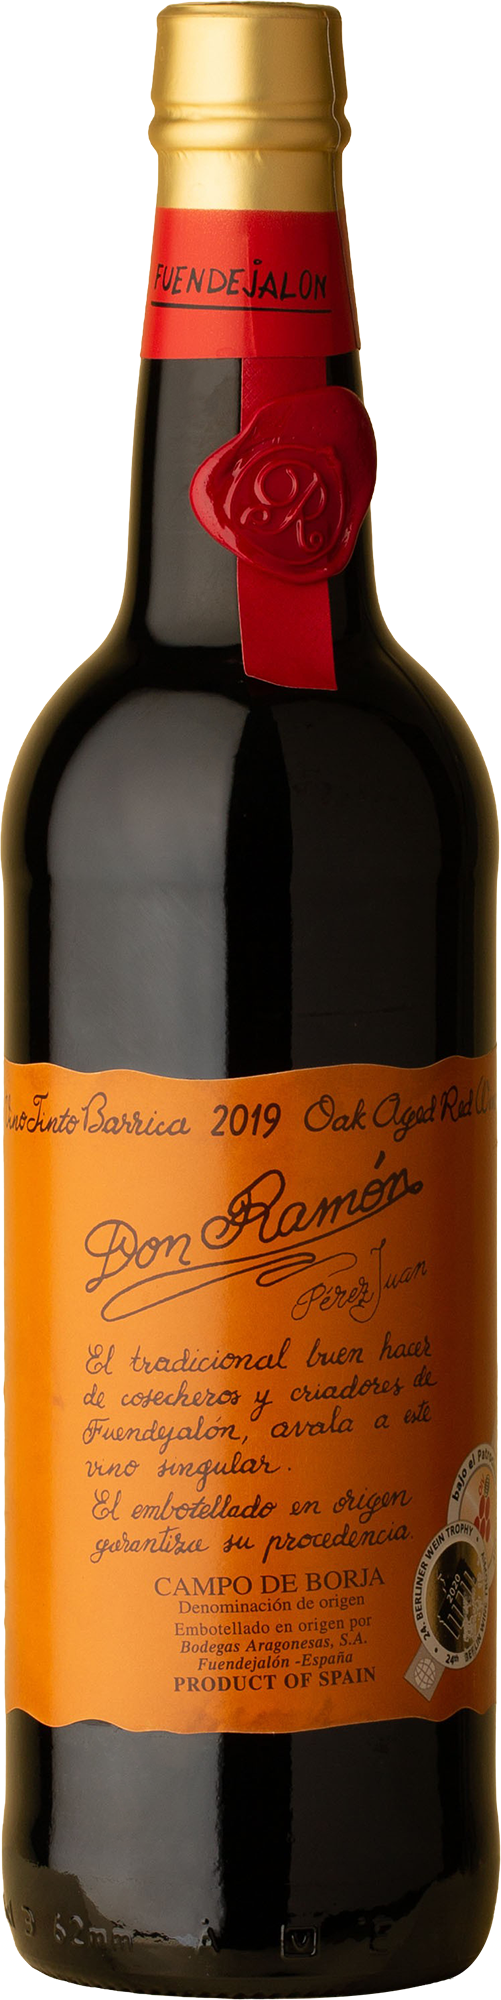 Don Ramon - Grenache / Tempranillo 2019 Red Wine